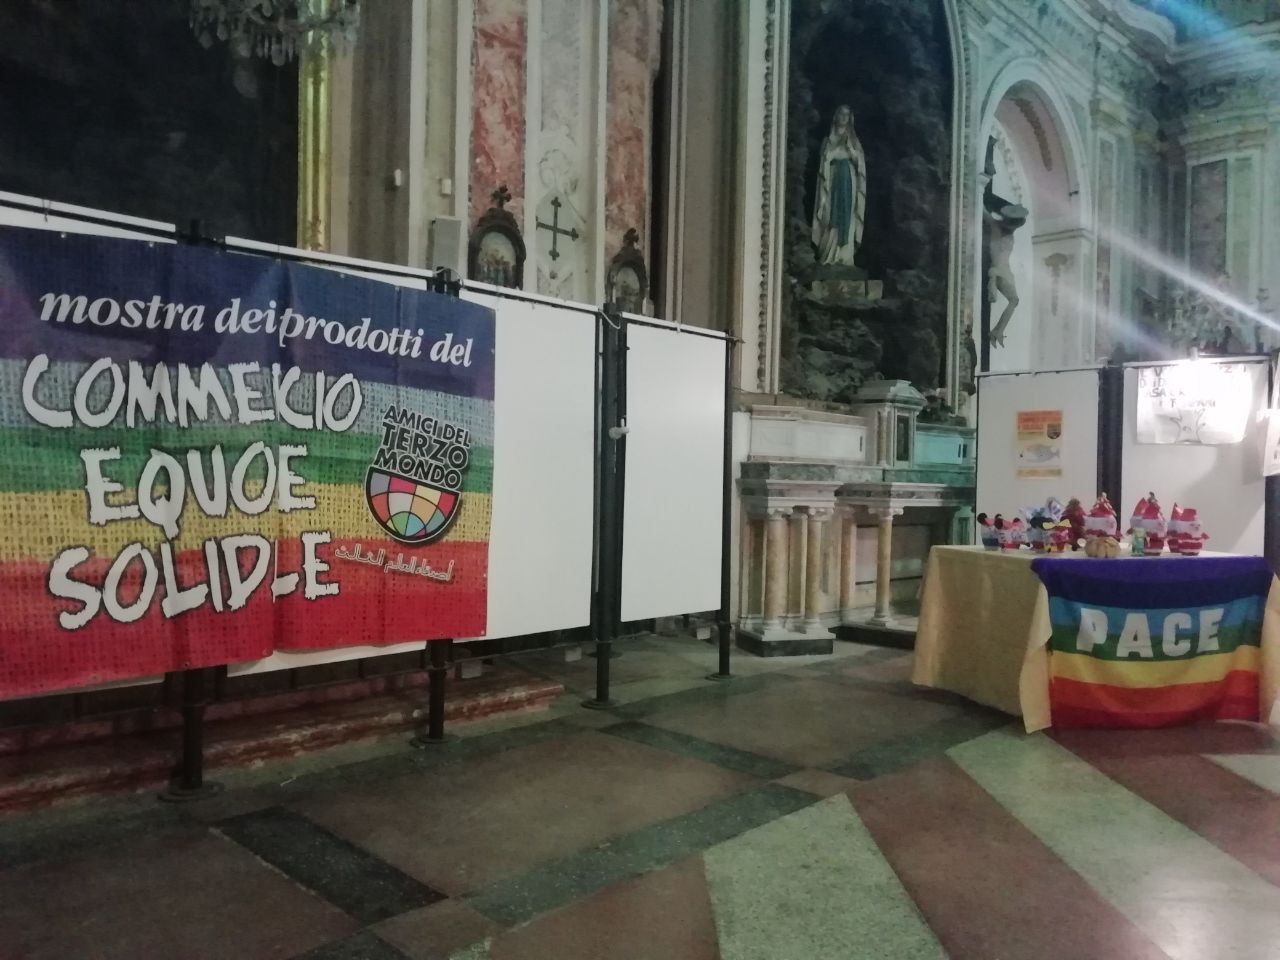 Nella Chiesa San Pietro la Mostra del Commercio Equo e Solidale fino al 22 dicembre